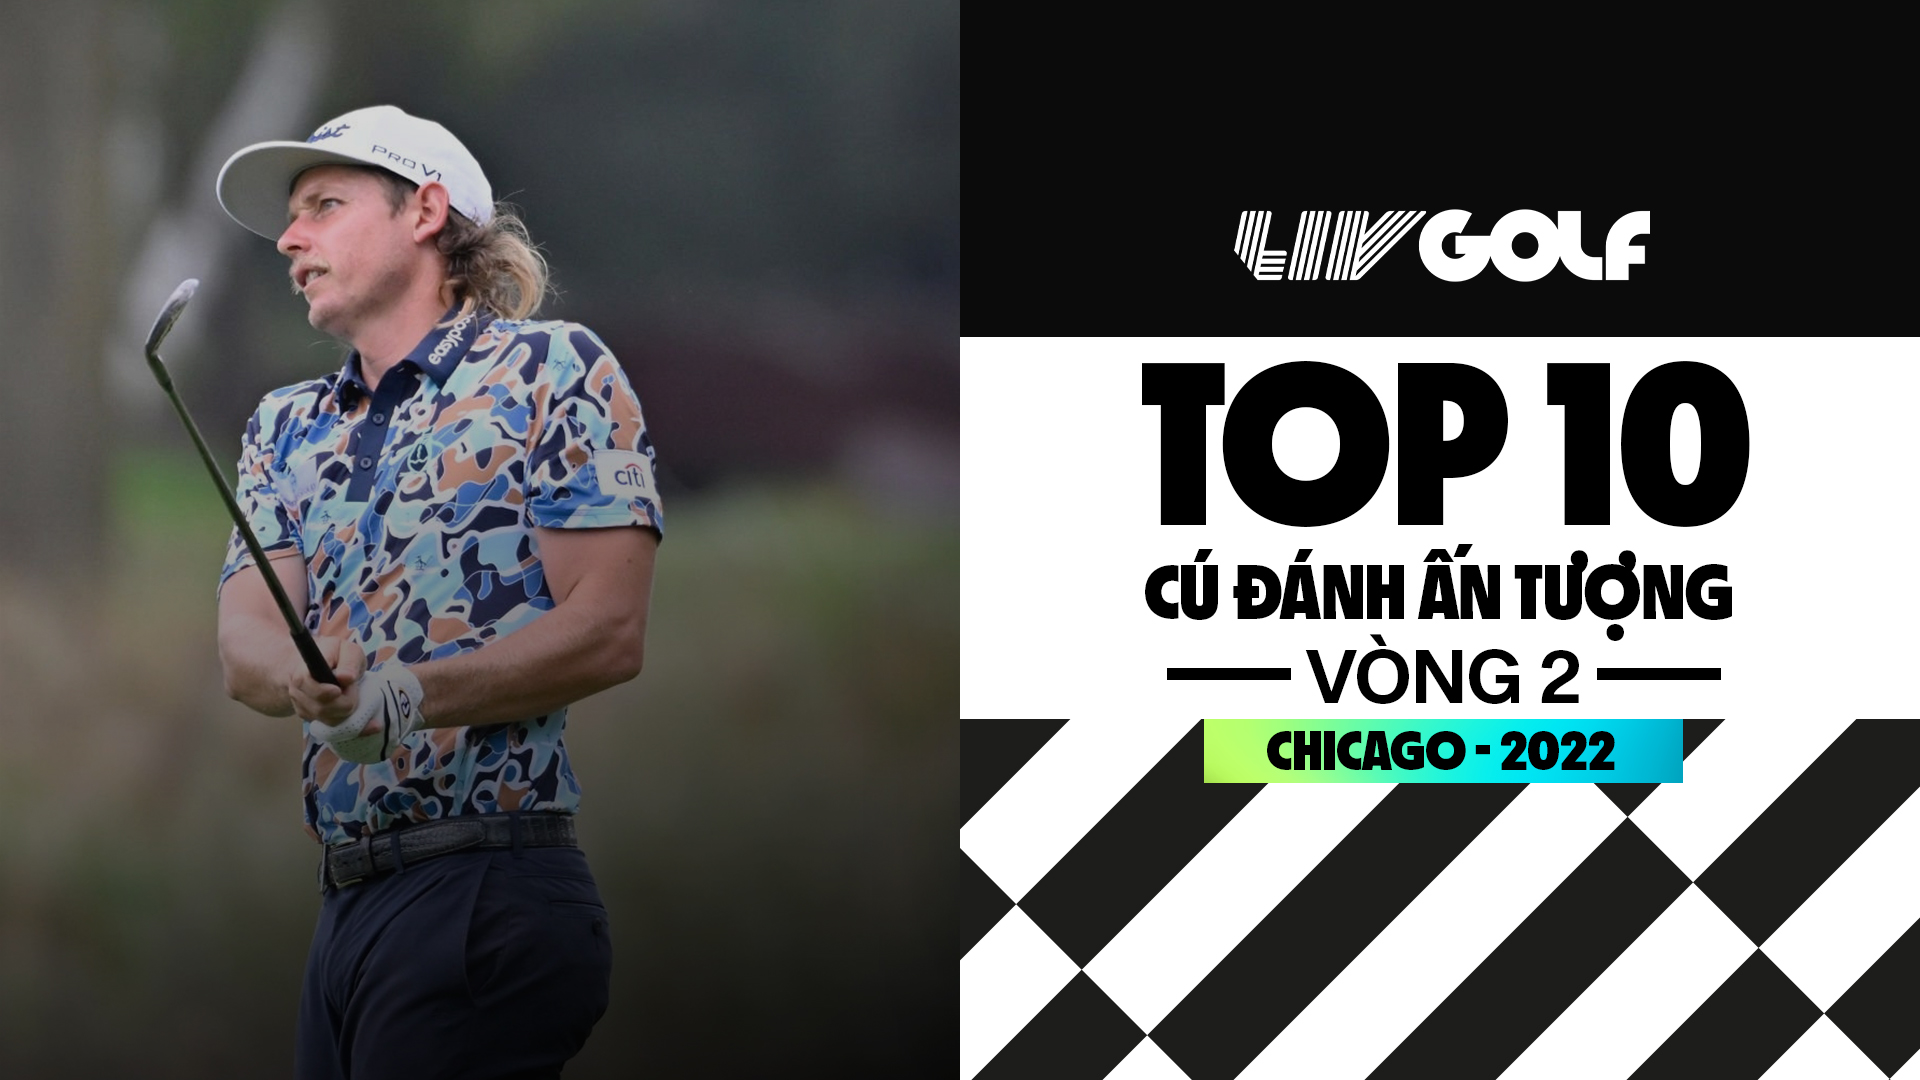 Top 10 cú đánh ấn tượng - Vòng 2 - LIV Golf